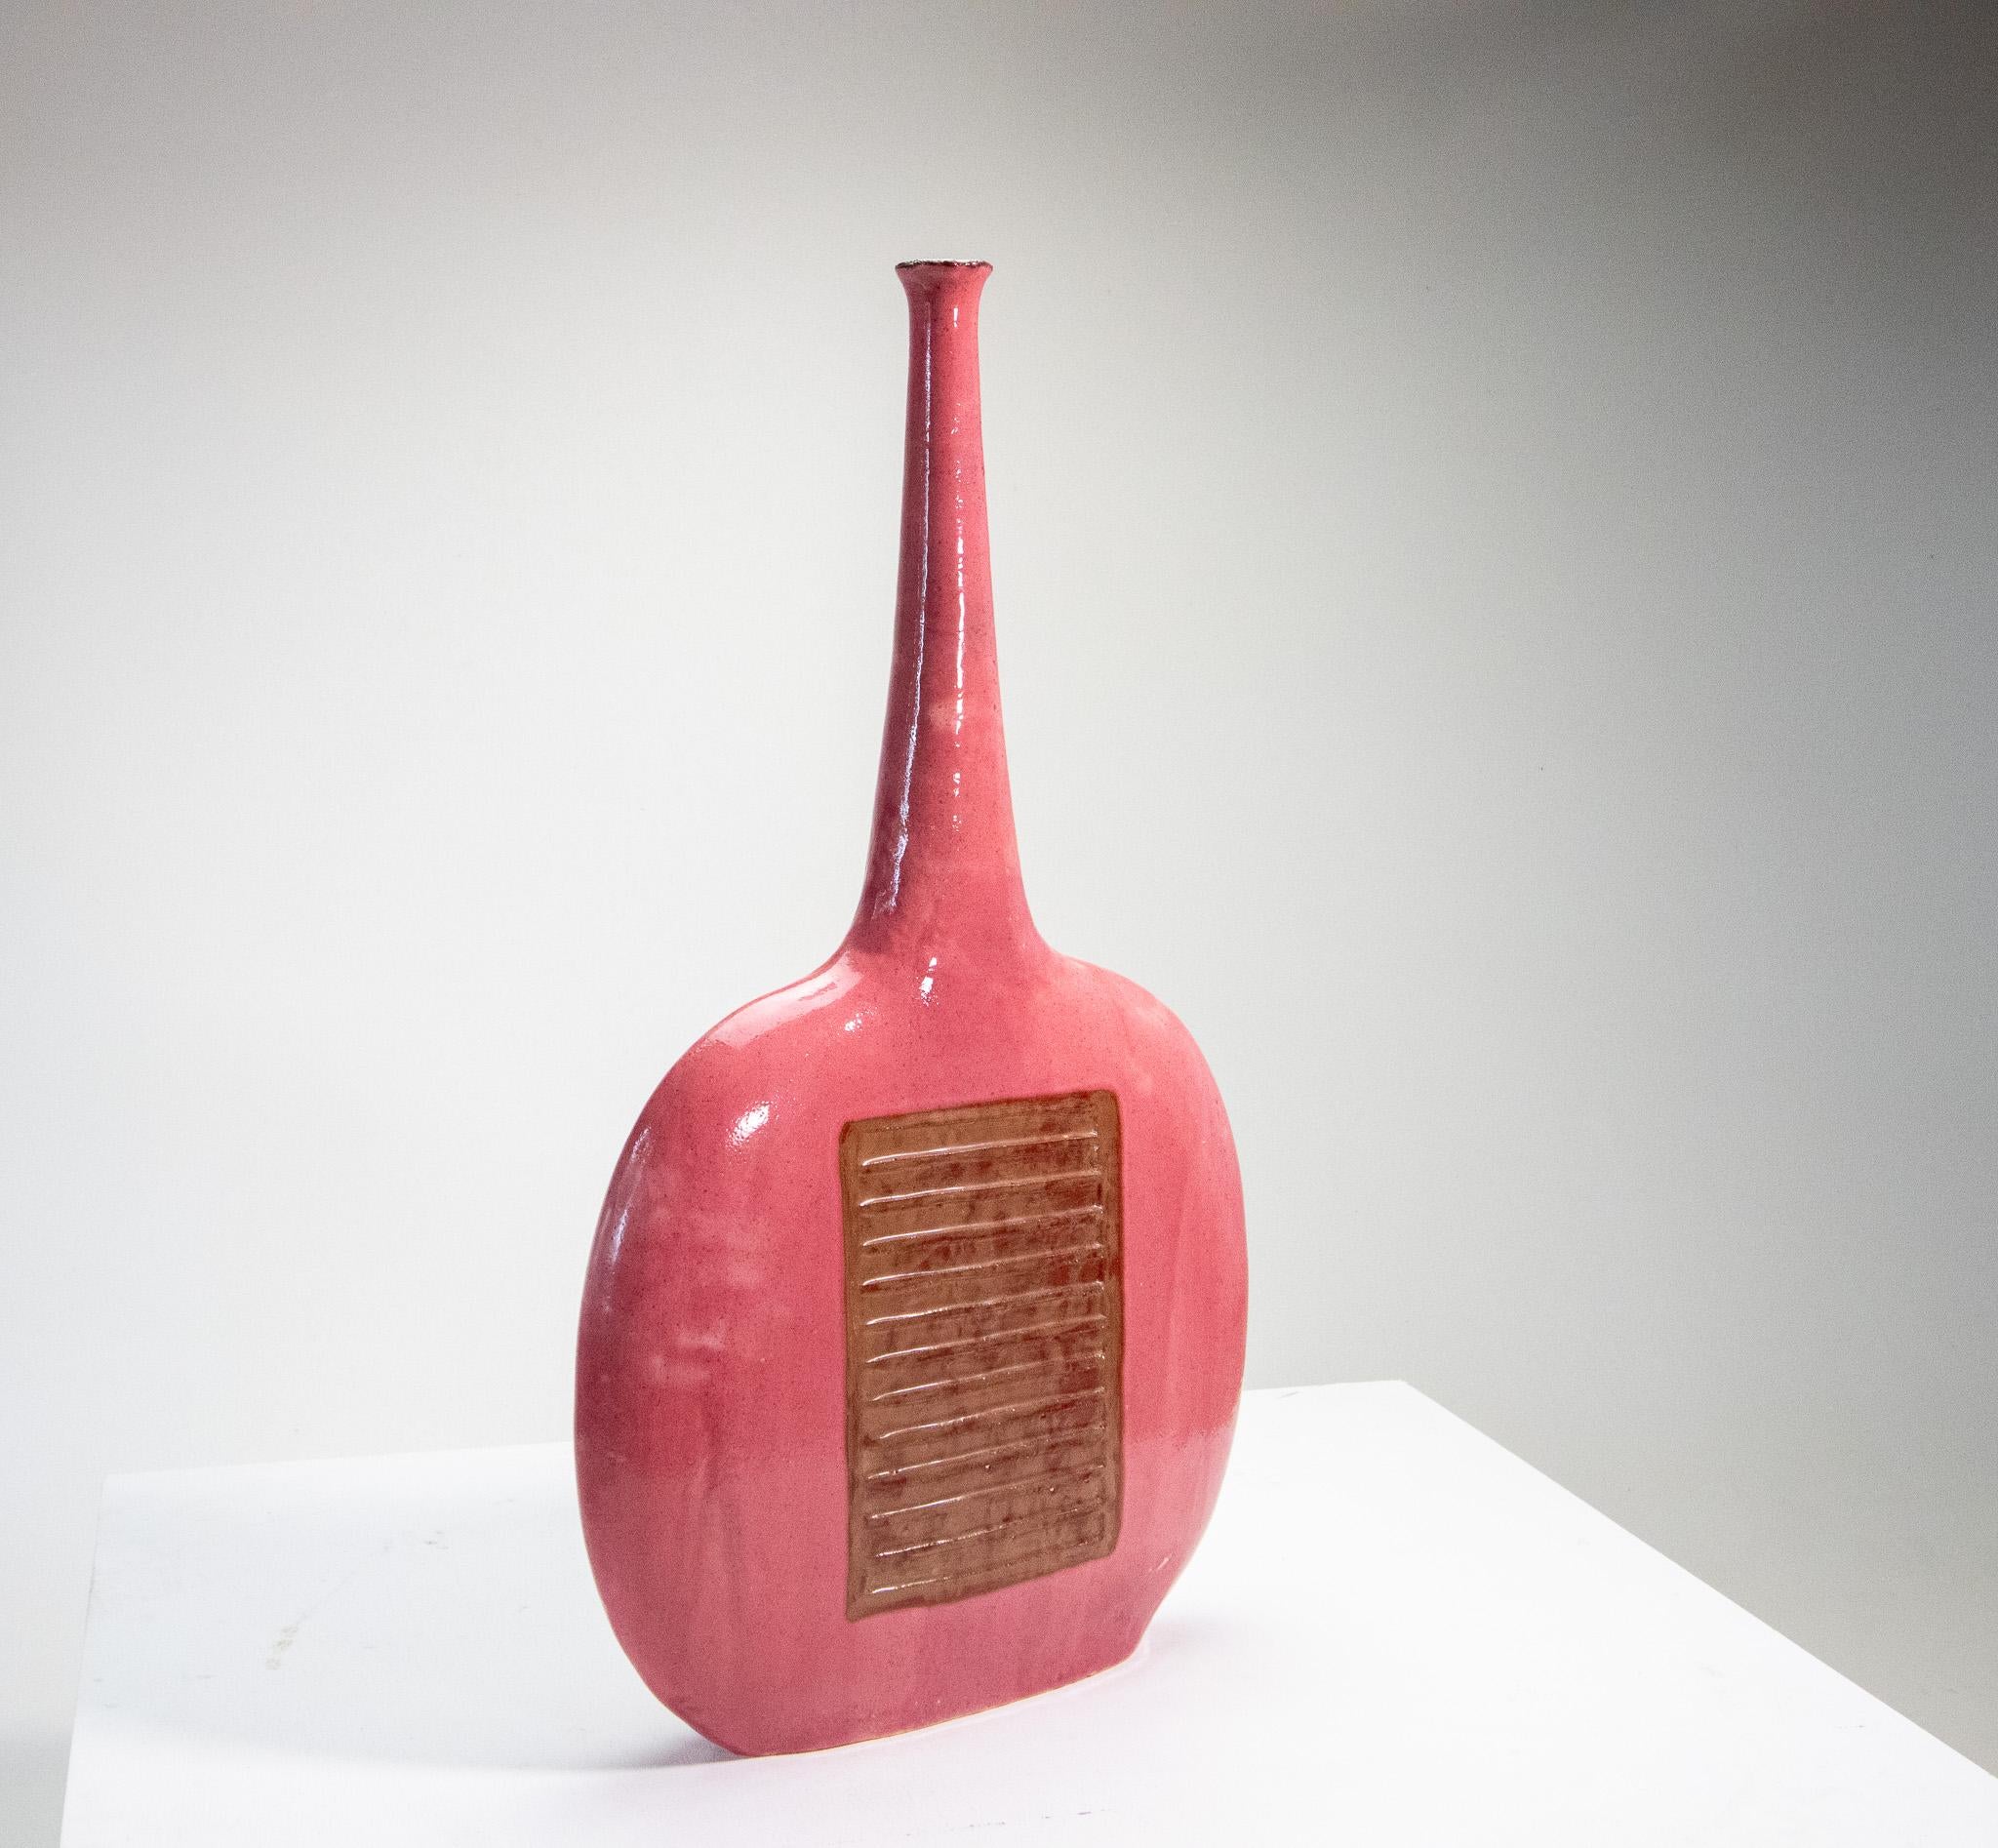 Skulpturale Vase von Bruno Gambone in Rosa, 1970er Jahre, 30